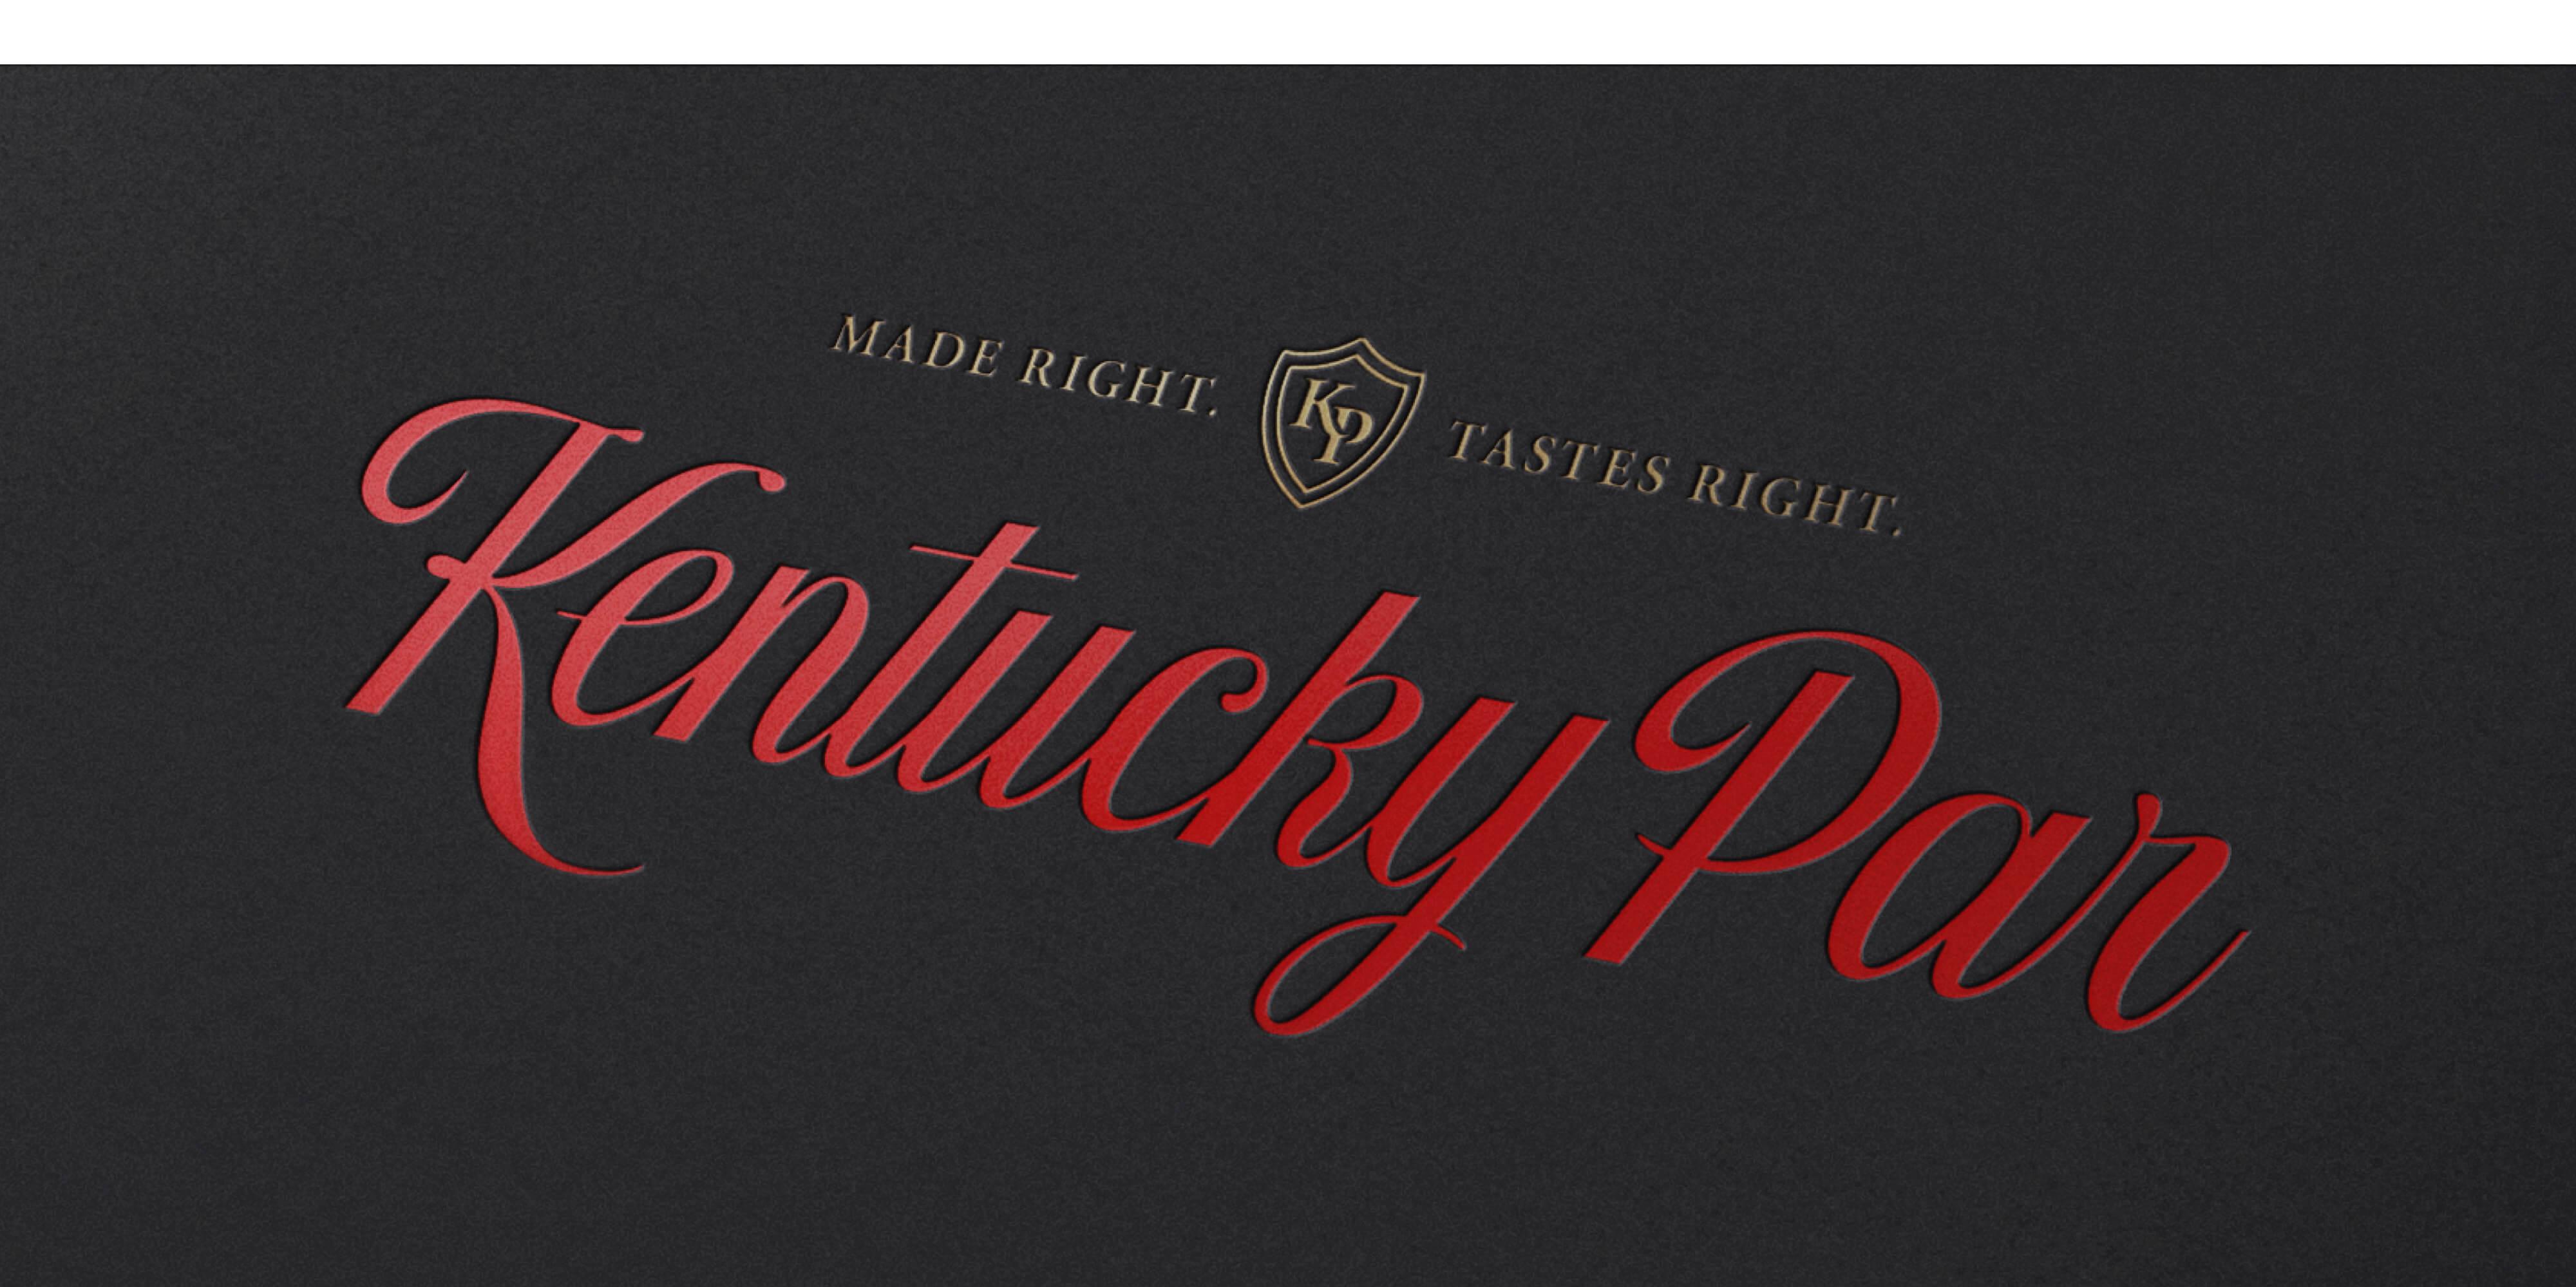 Kentucky Par branding image